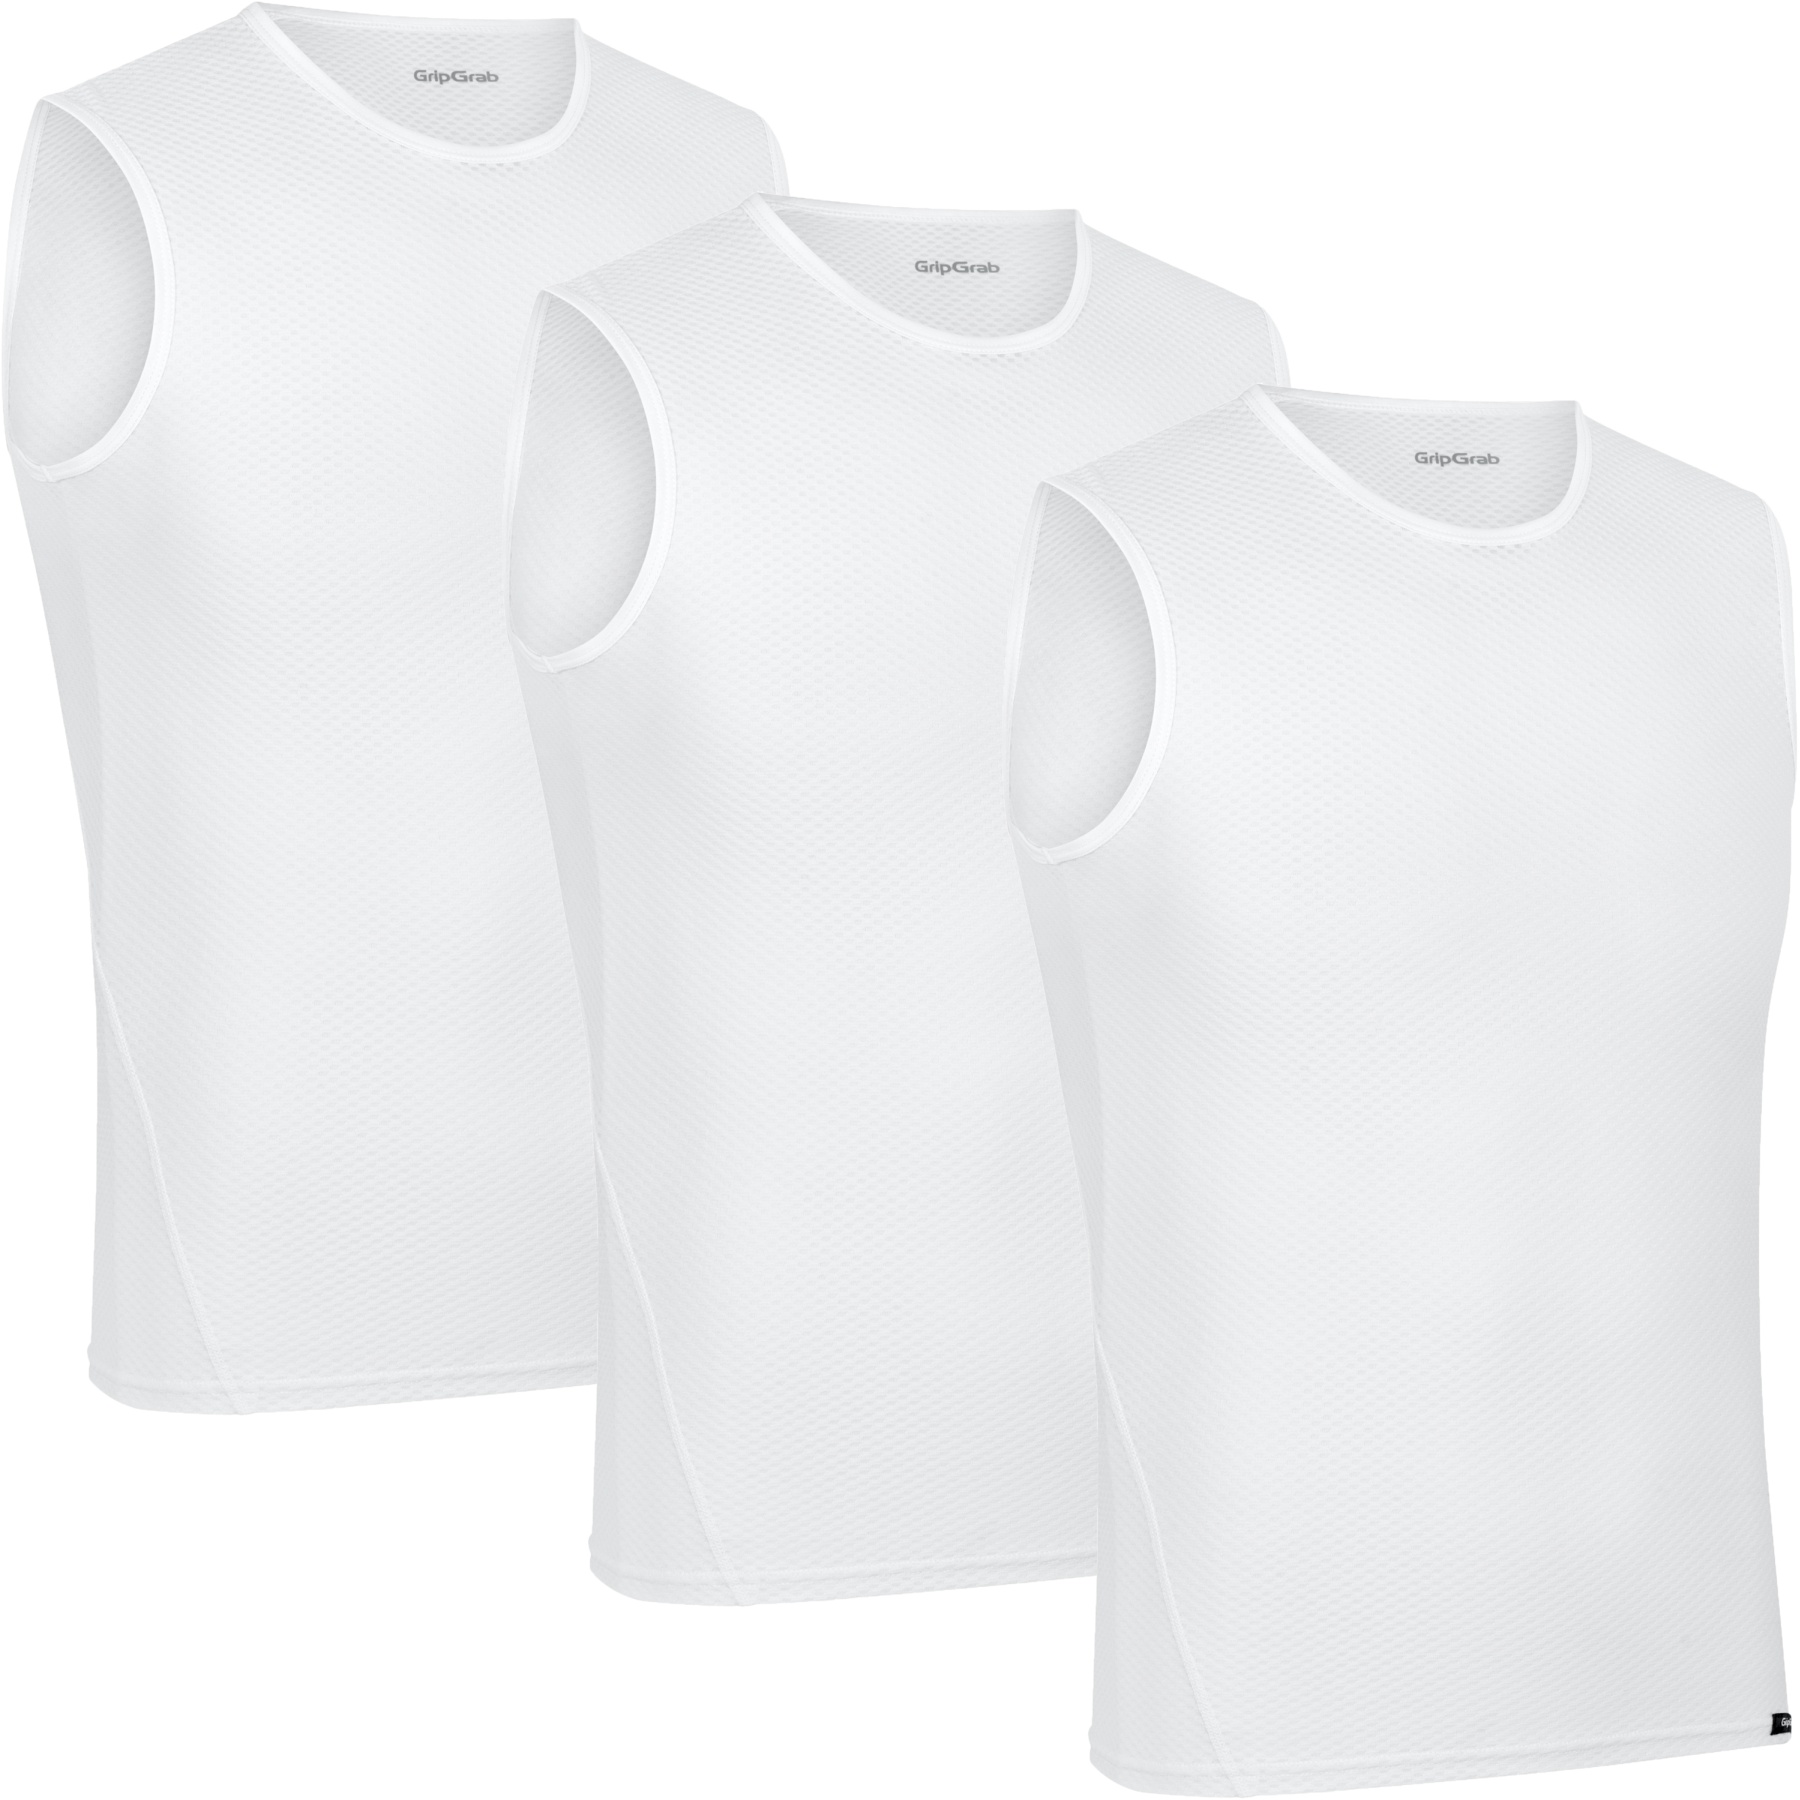 Produktbild von GripGrab Ultralight Mesh Unterhemd Ärmellos Herren 3PACK - White